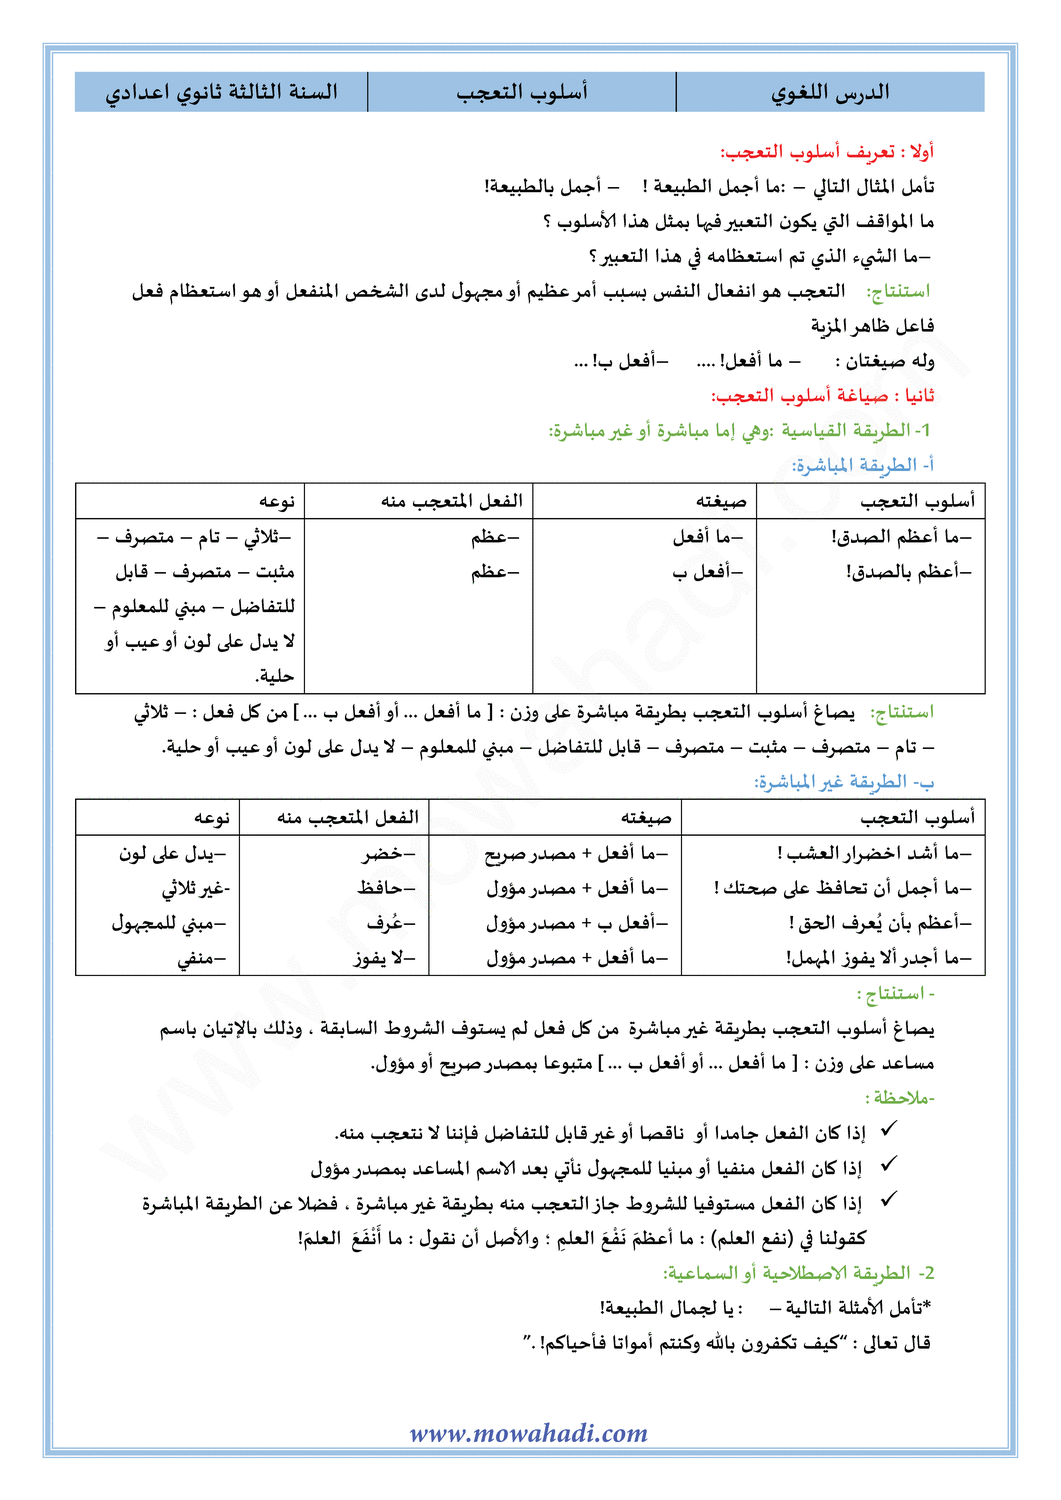 الدرس اللغوي أسلوب التعجب للسنة الثالثة اعدادي في مادة اللغة العربية